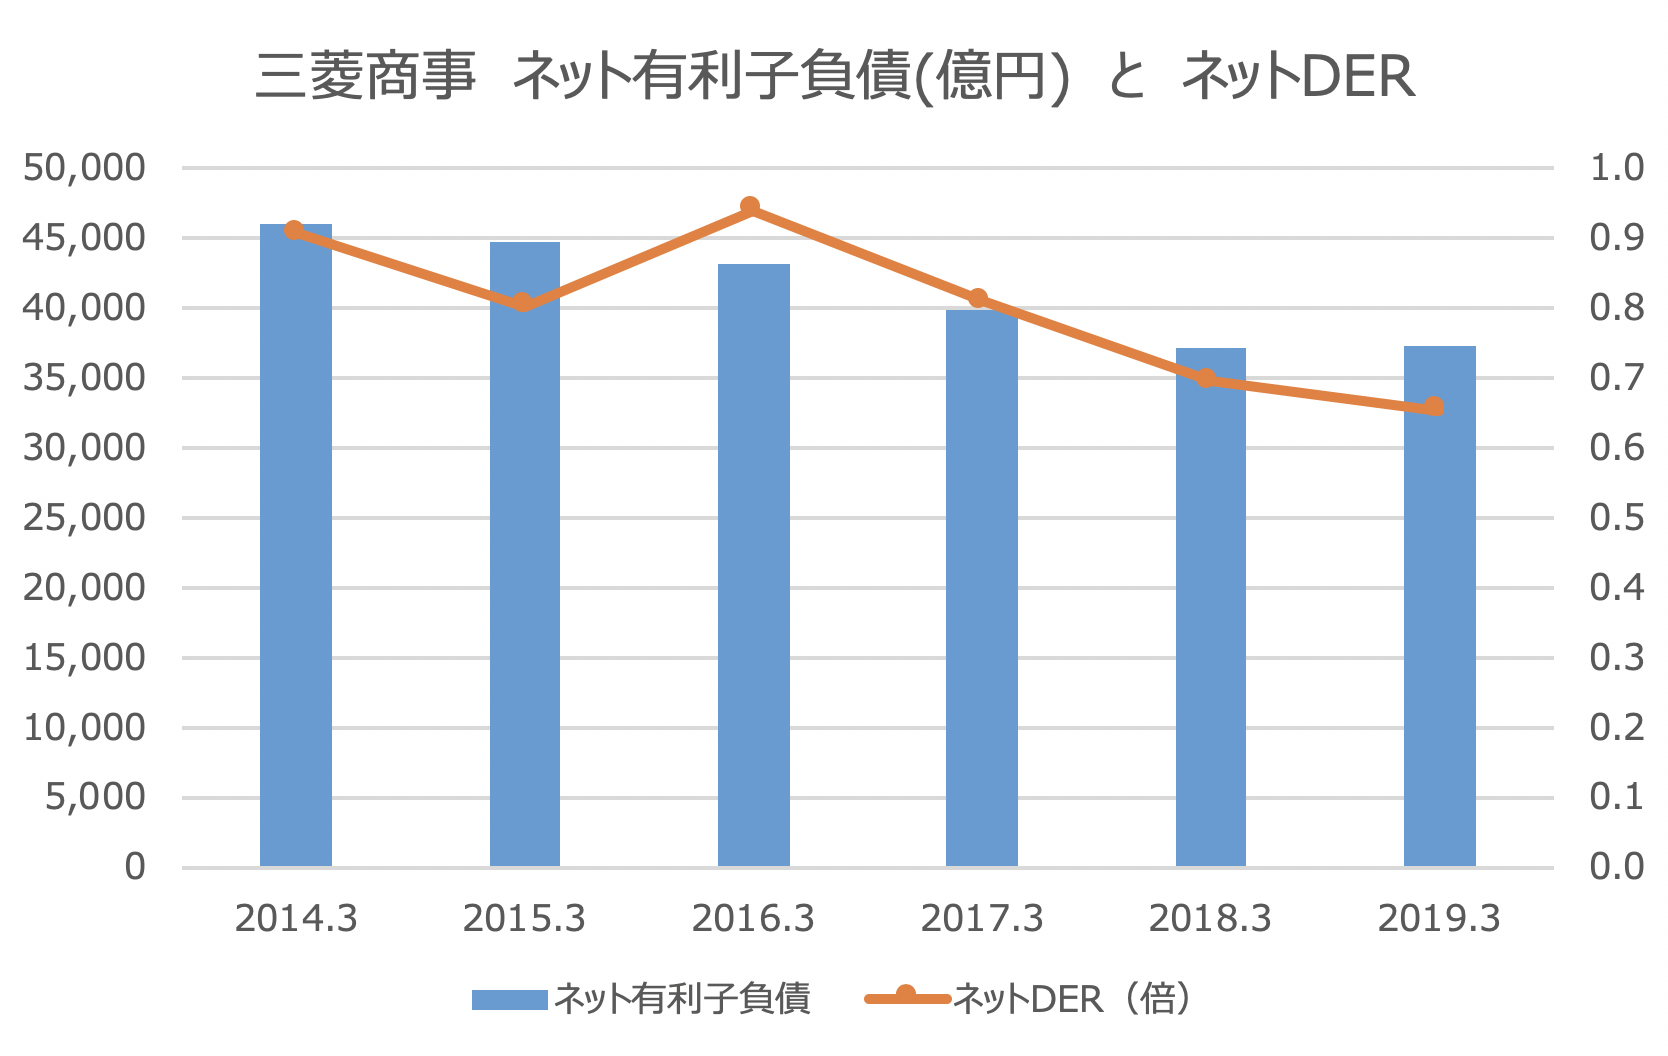 三菱商事　ネット有利子負債(億円)　と　ネットDER